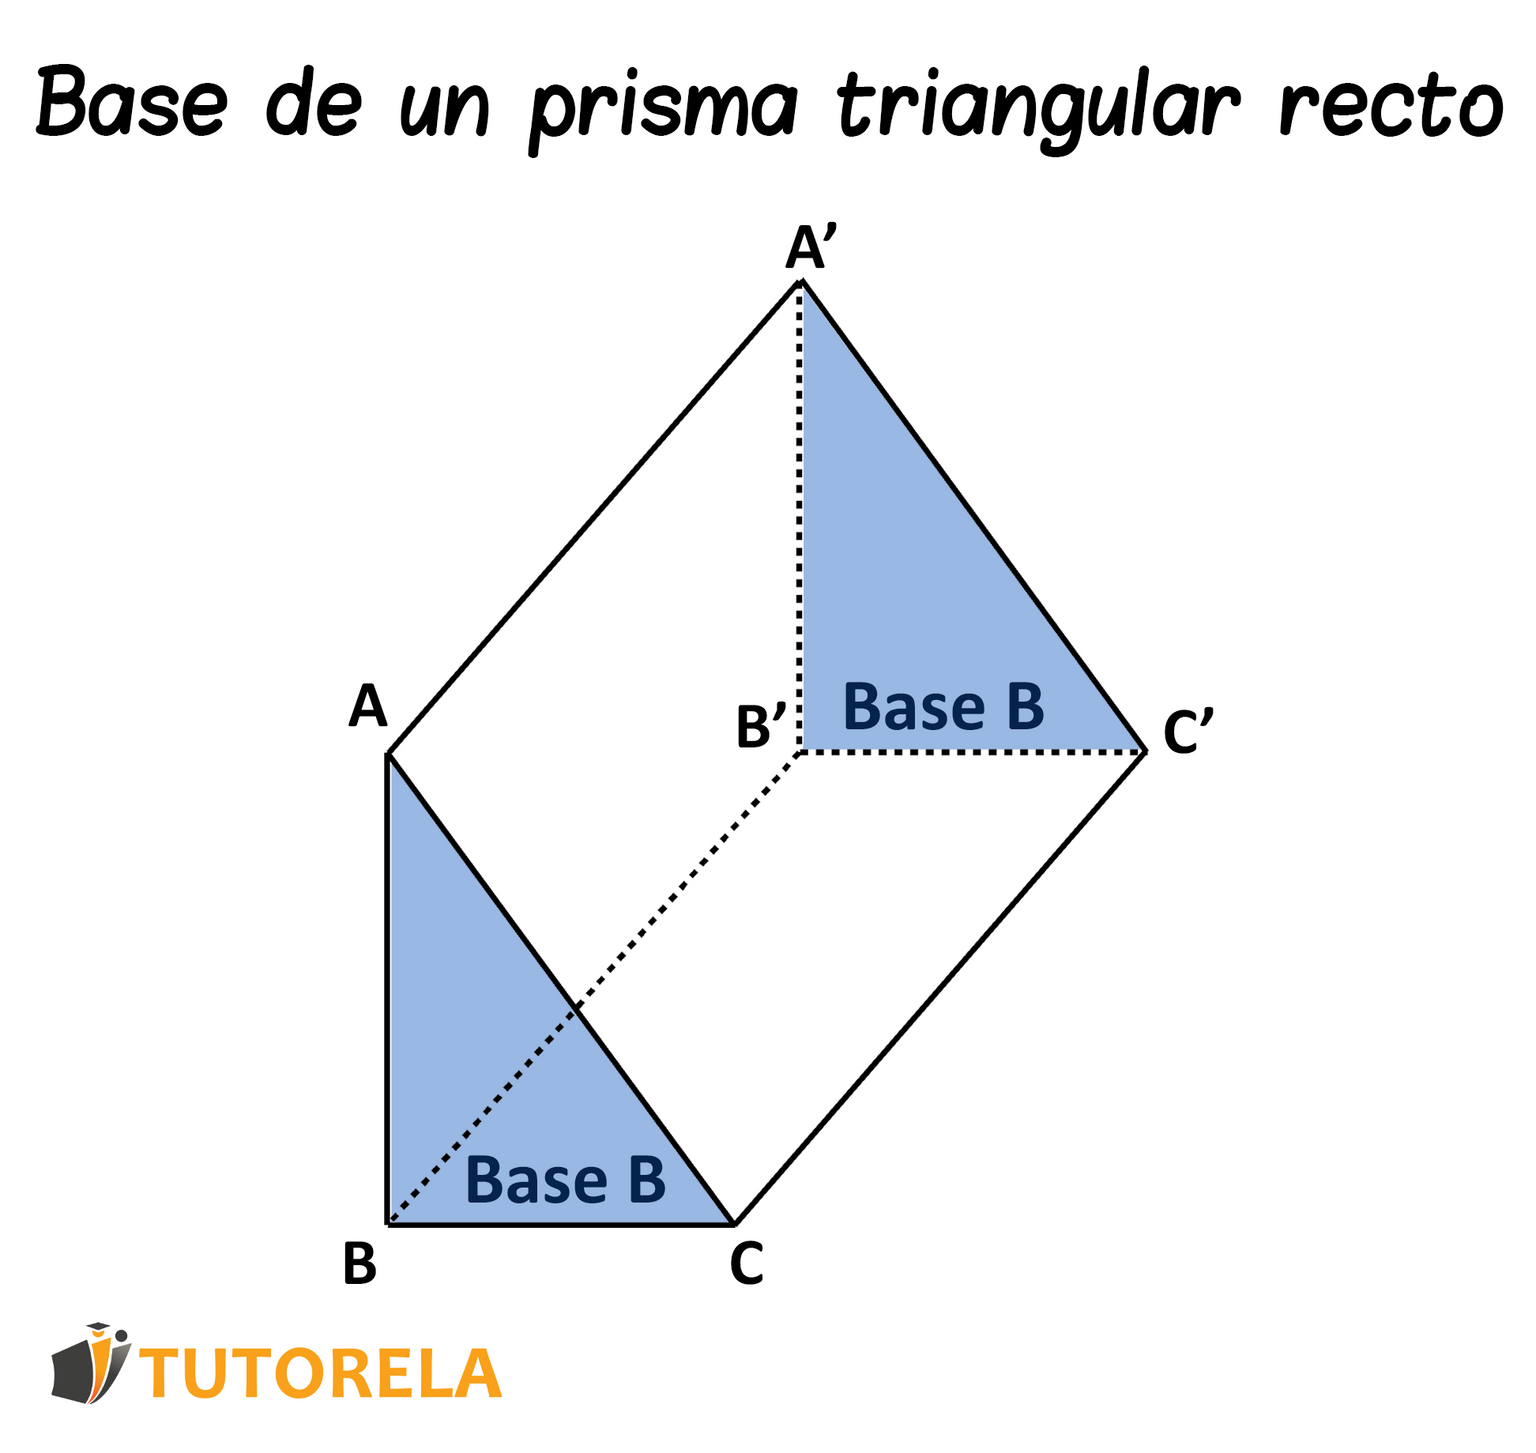 Base de un prisma triangular recto